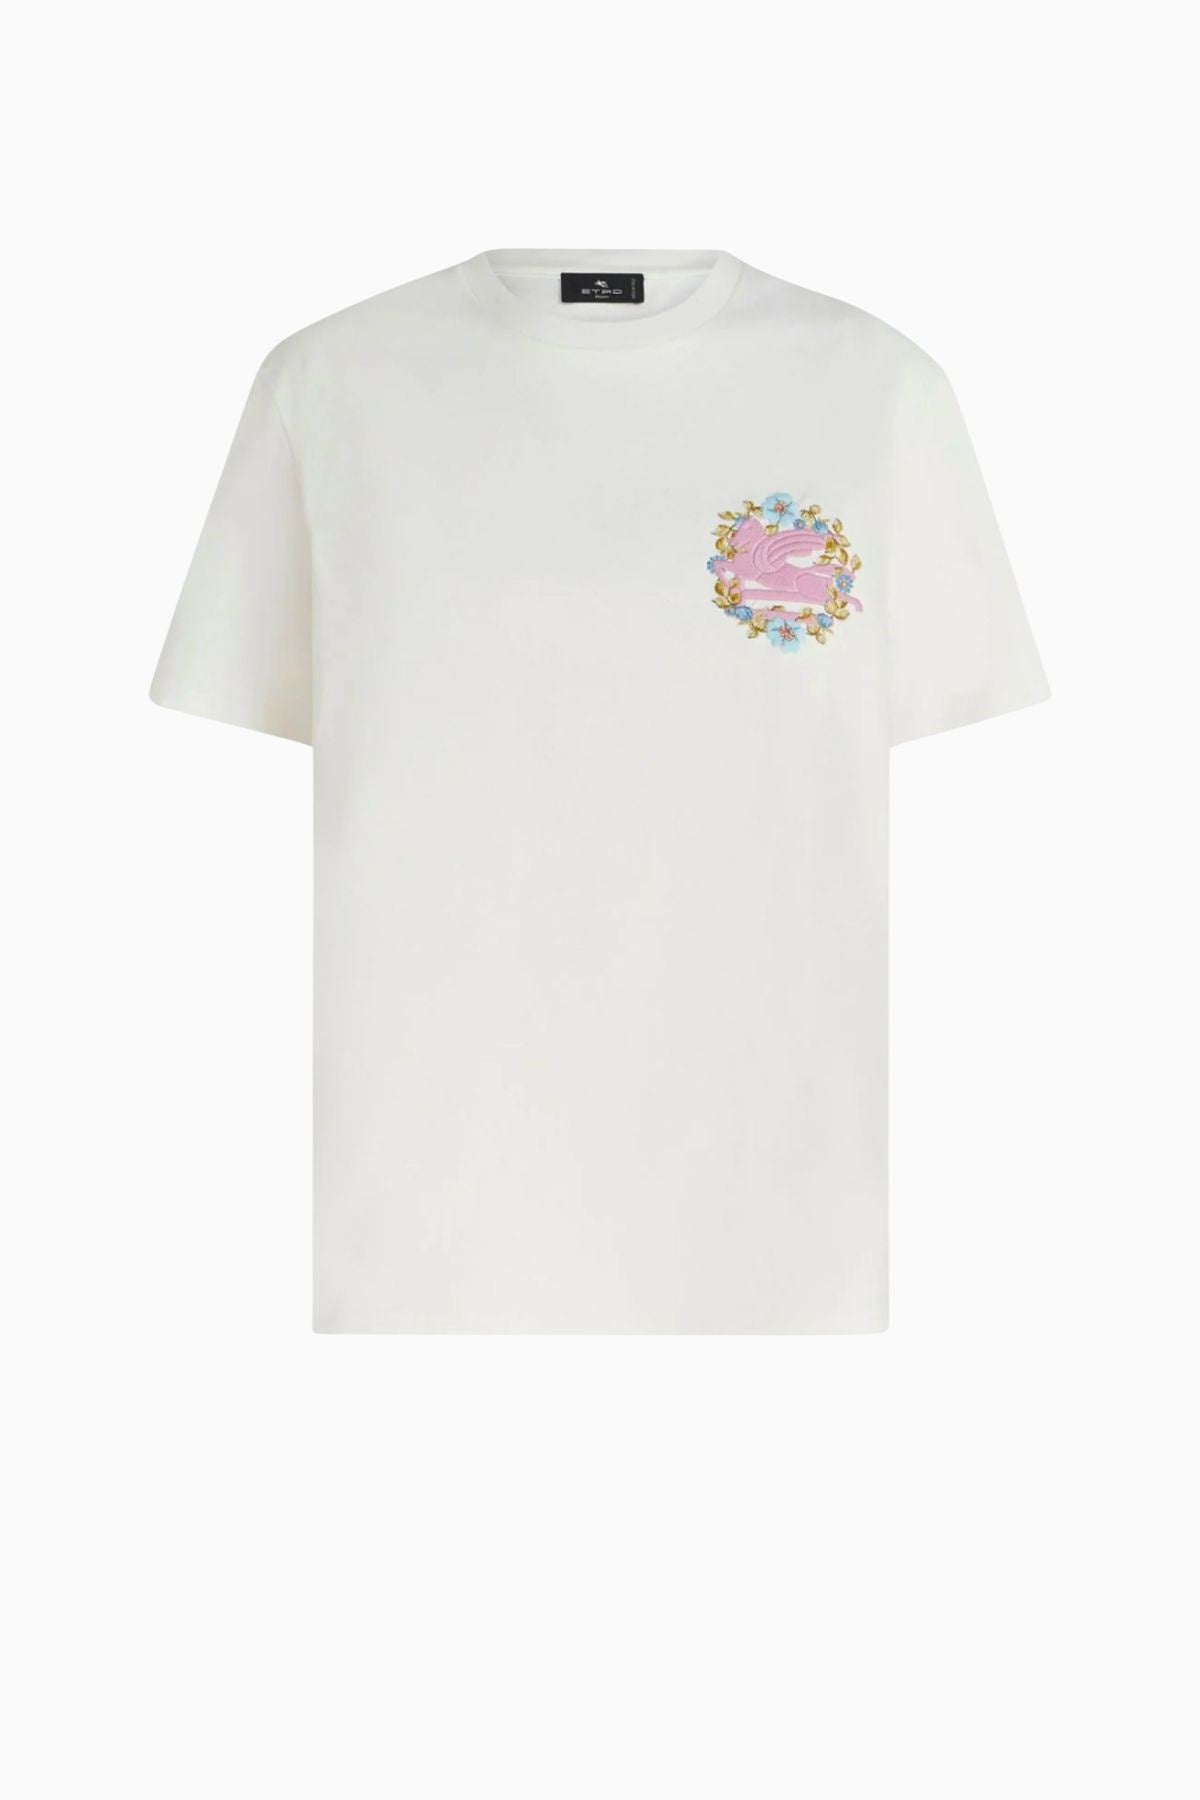 Etro Logo Embroidery T-Shirt - White